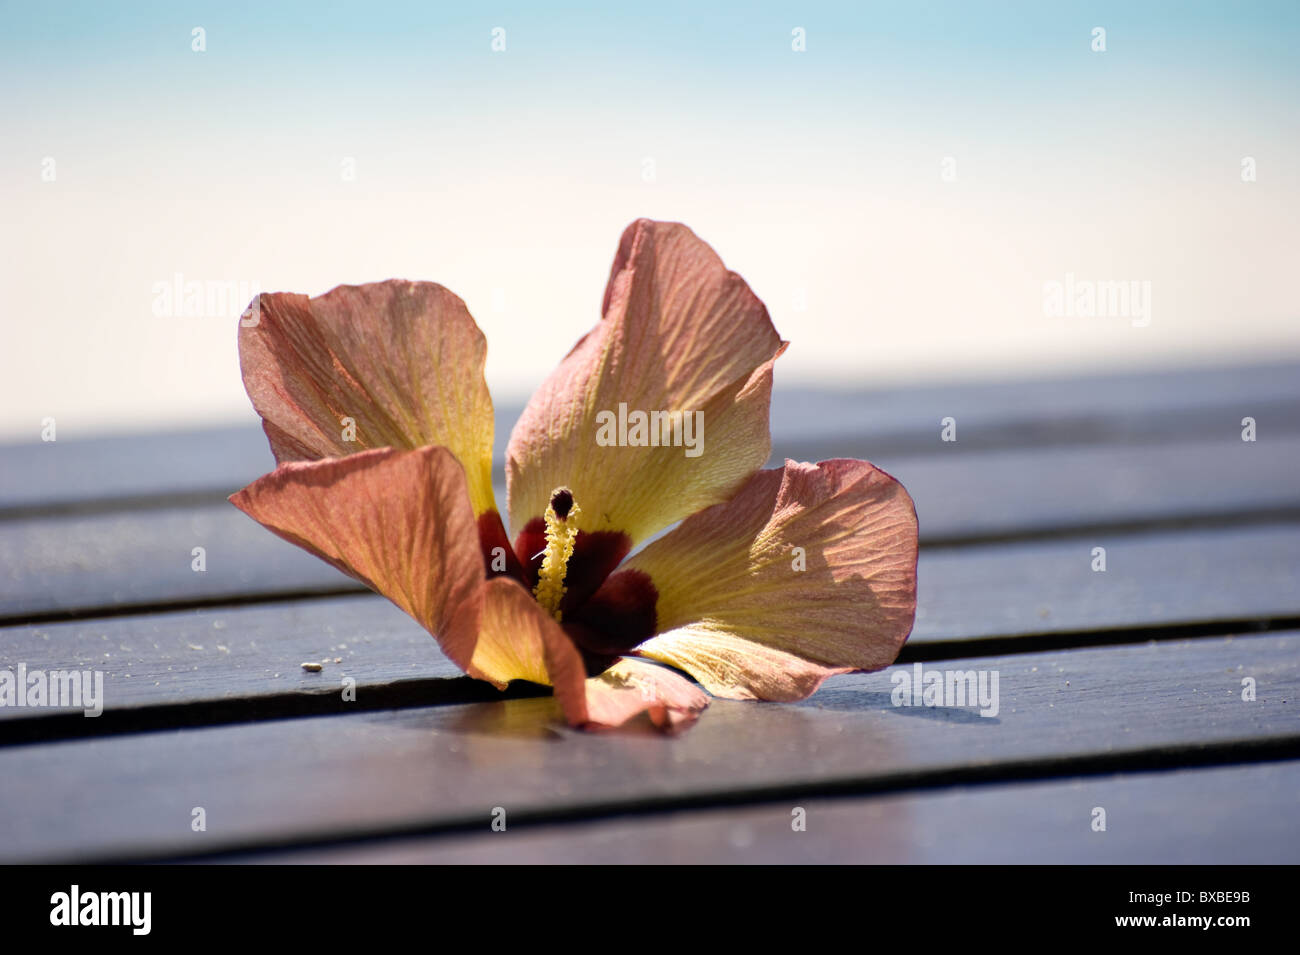 Fiore tropicale sul decking in legno Foto Stock